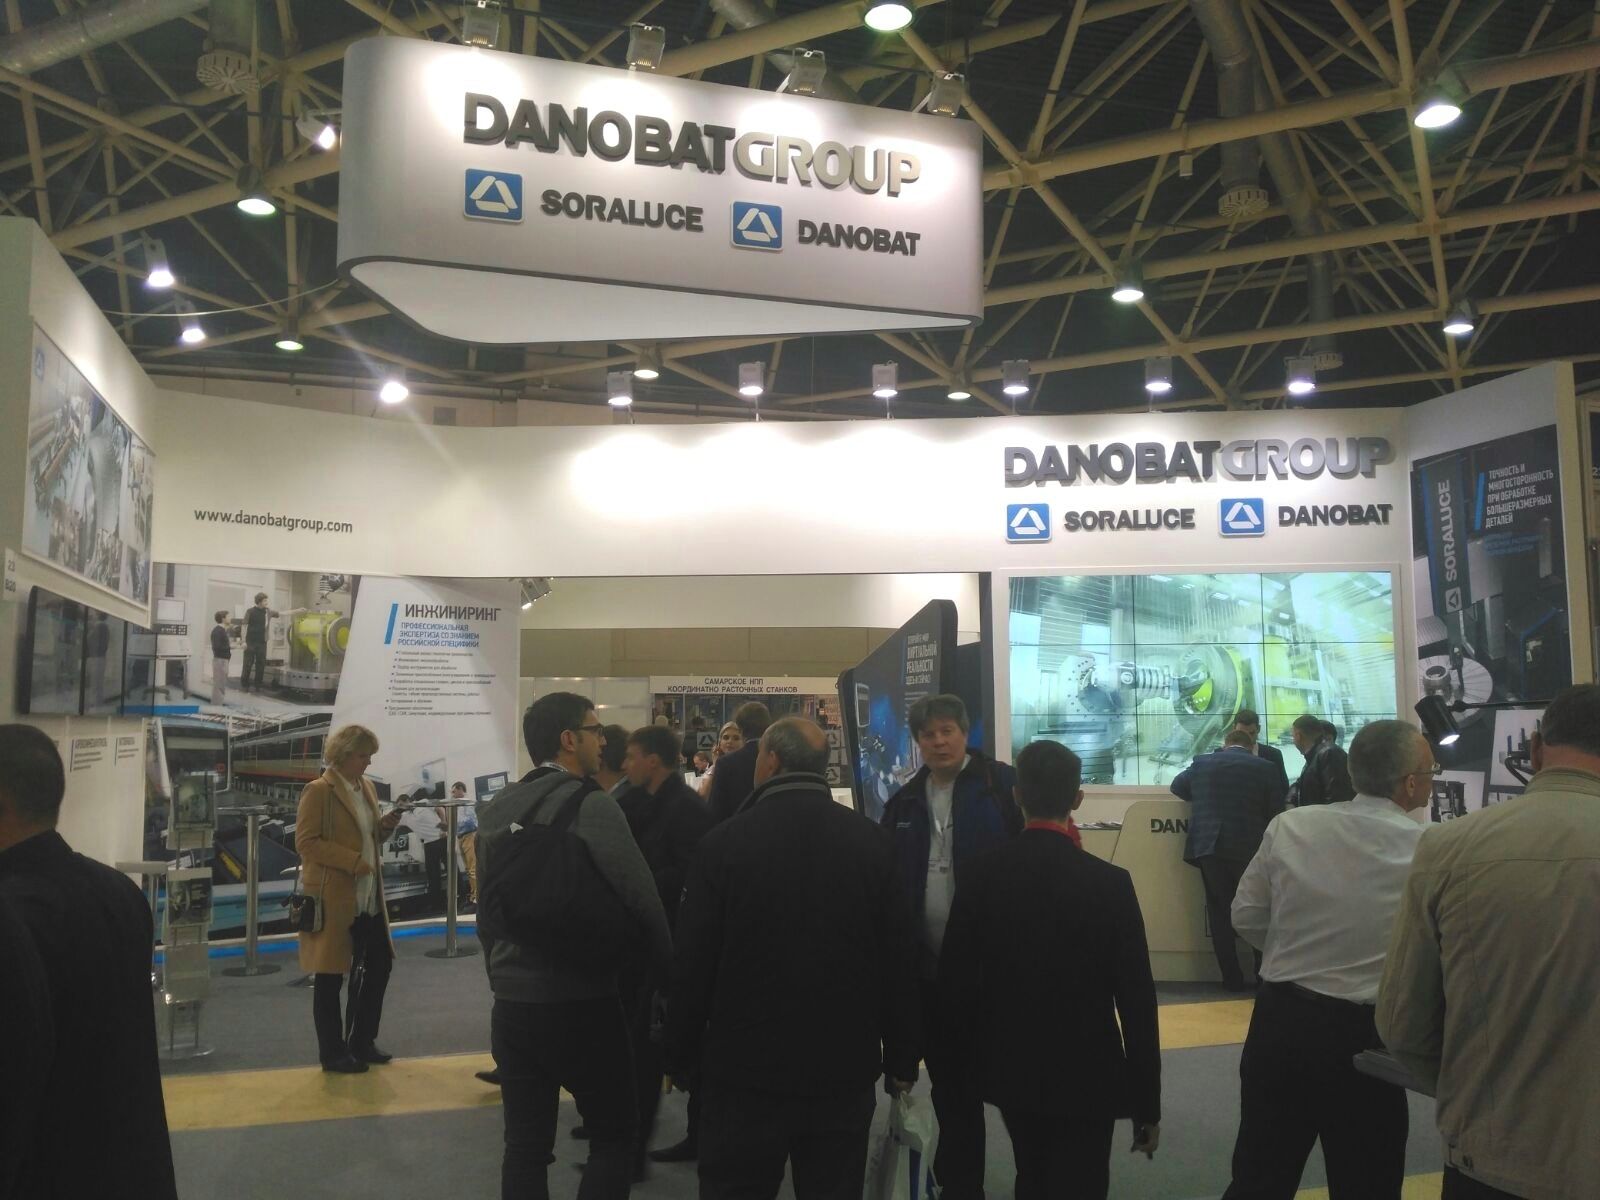 DANOBATGROUP presenta los últimos desarrollos de DANOBAT y SORALUCE en la feria METALLOBRABOTKA de Moscú